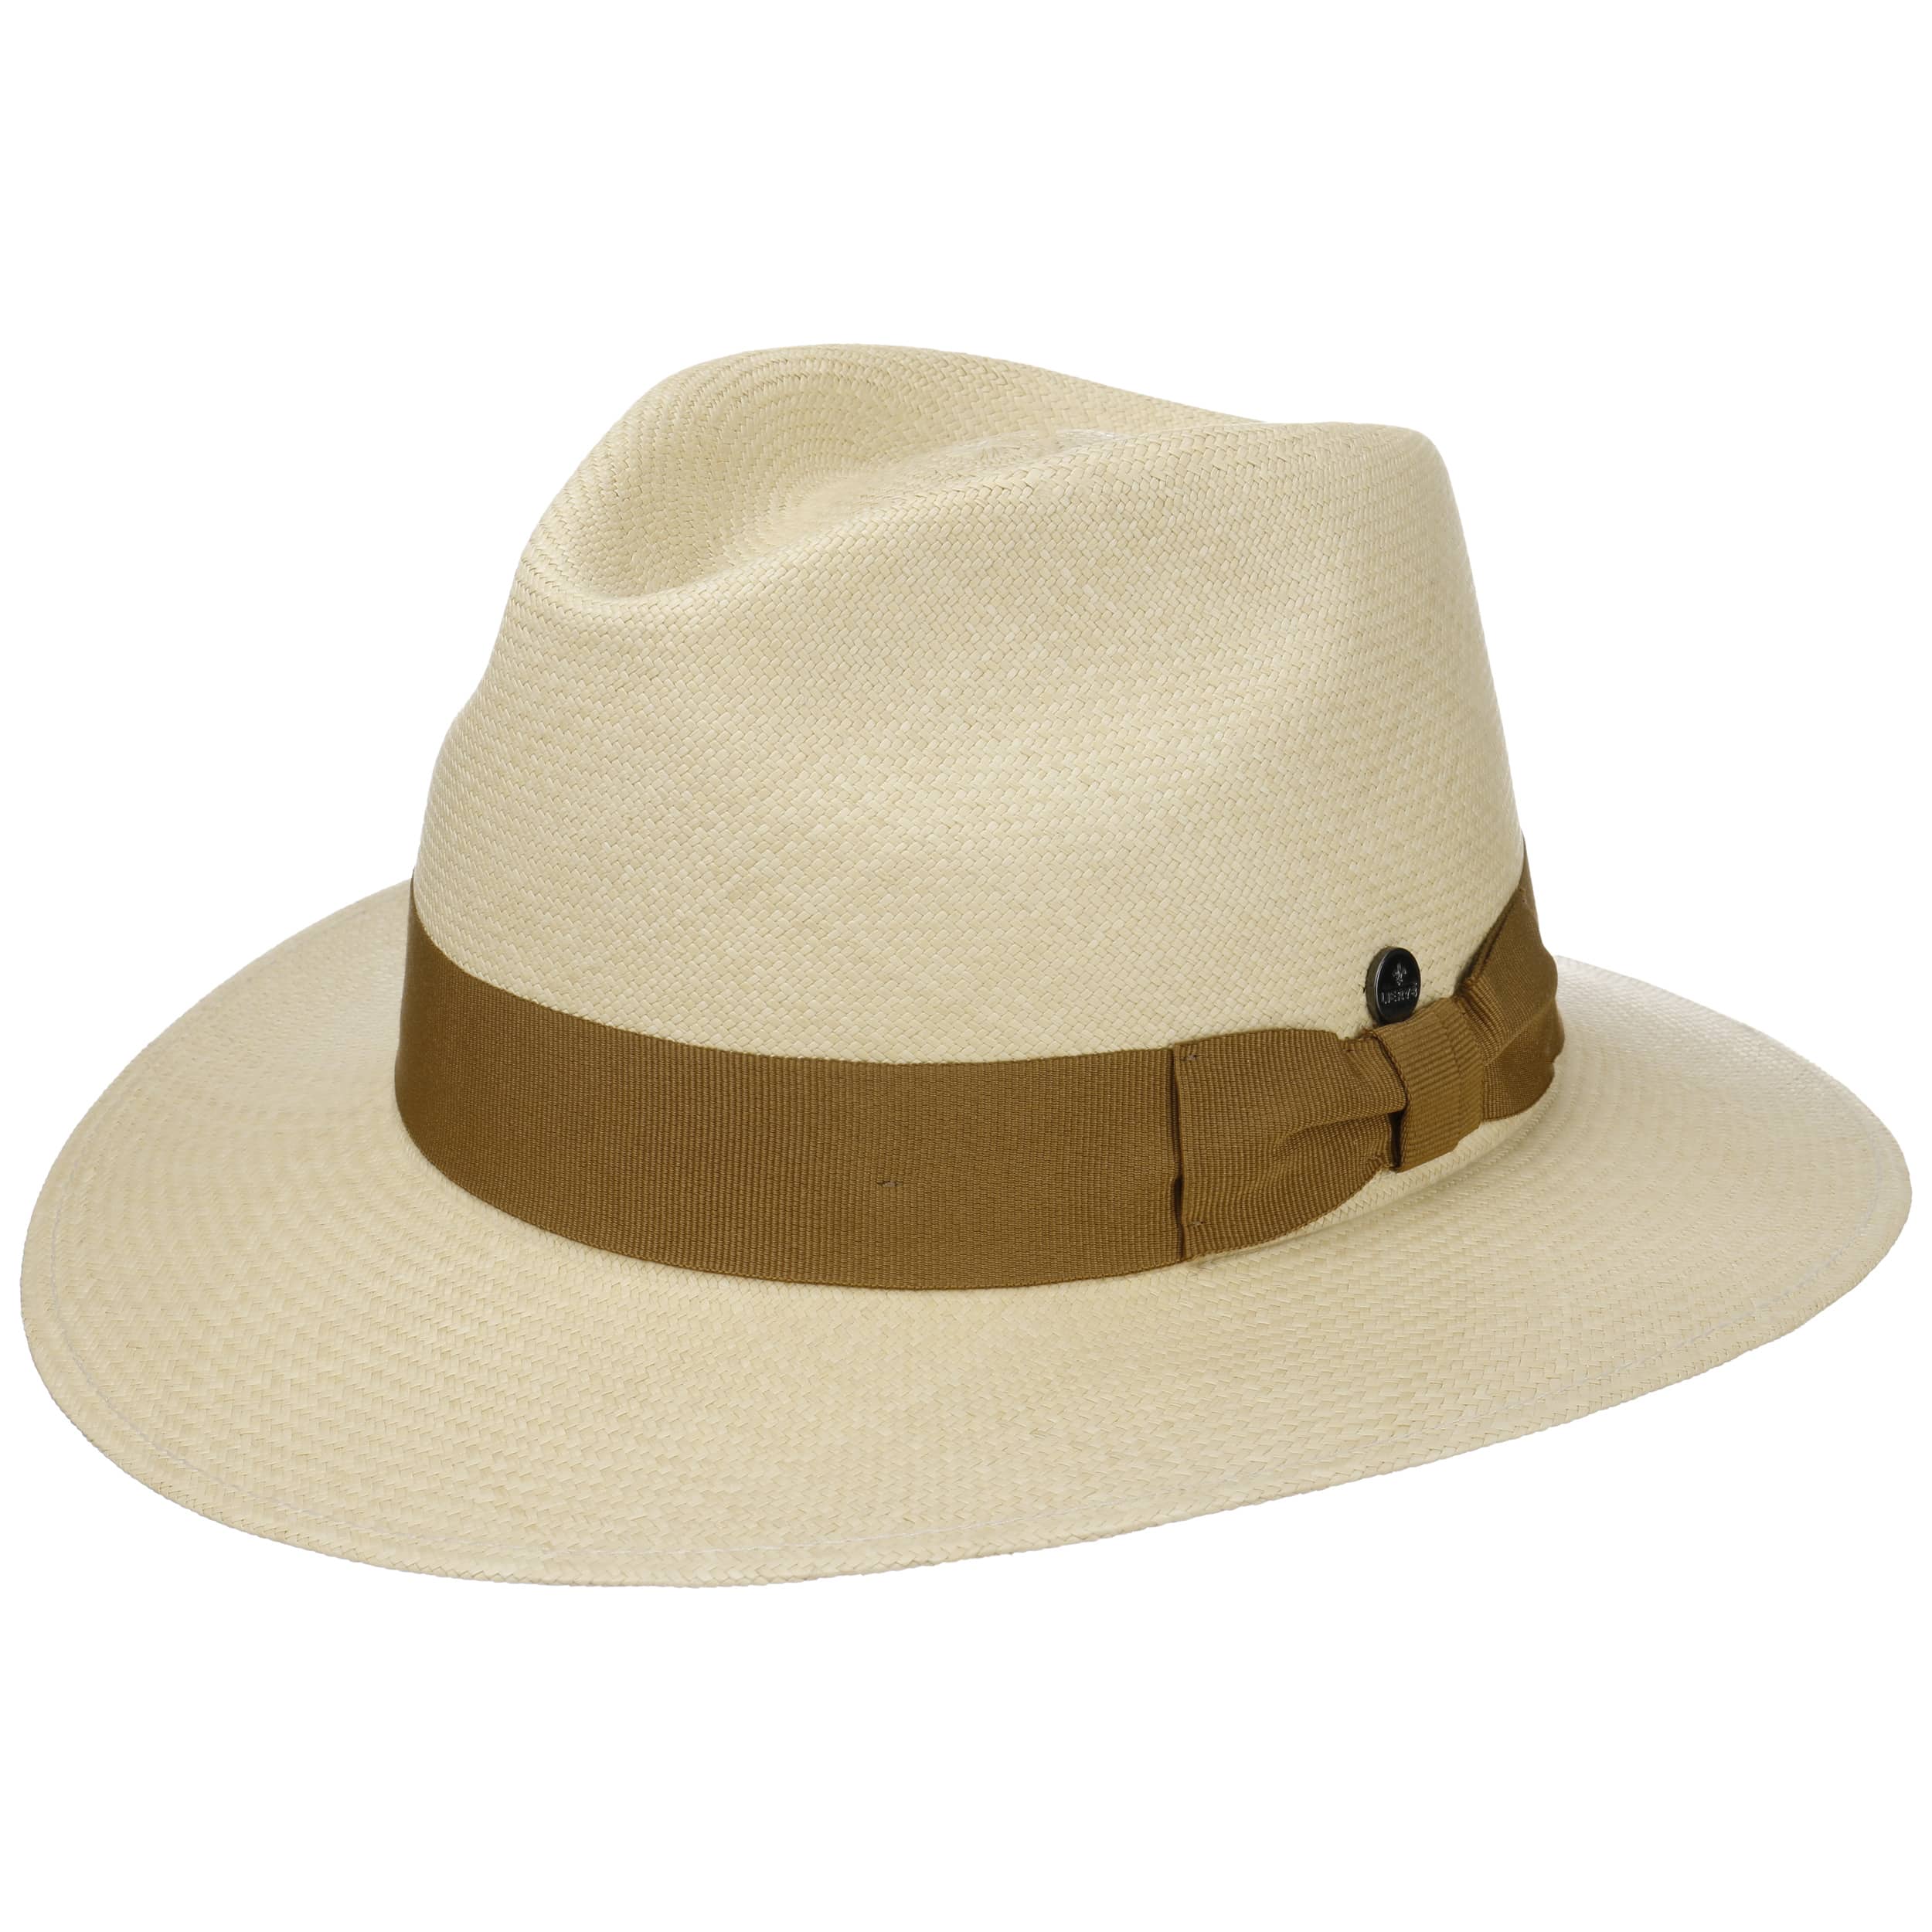 Accessoires Hüte Panamahüte Hut braun beige 